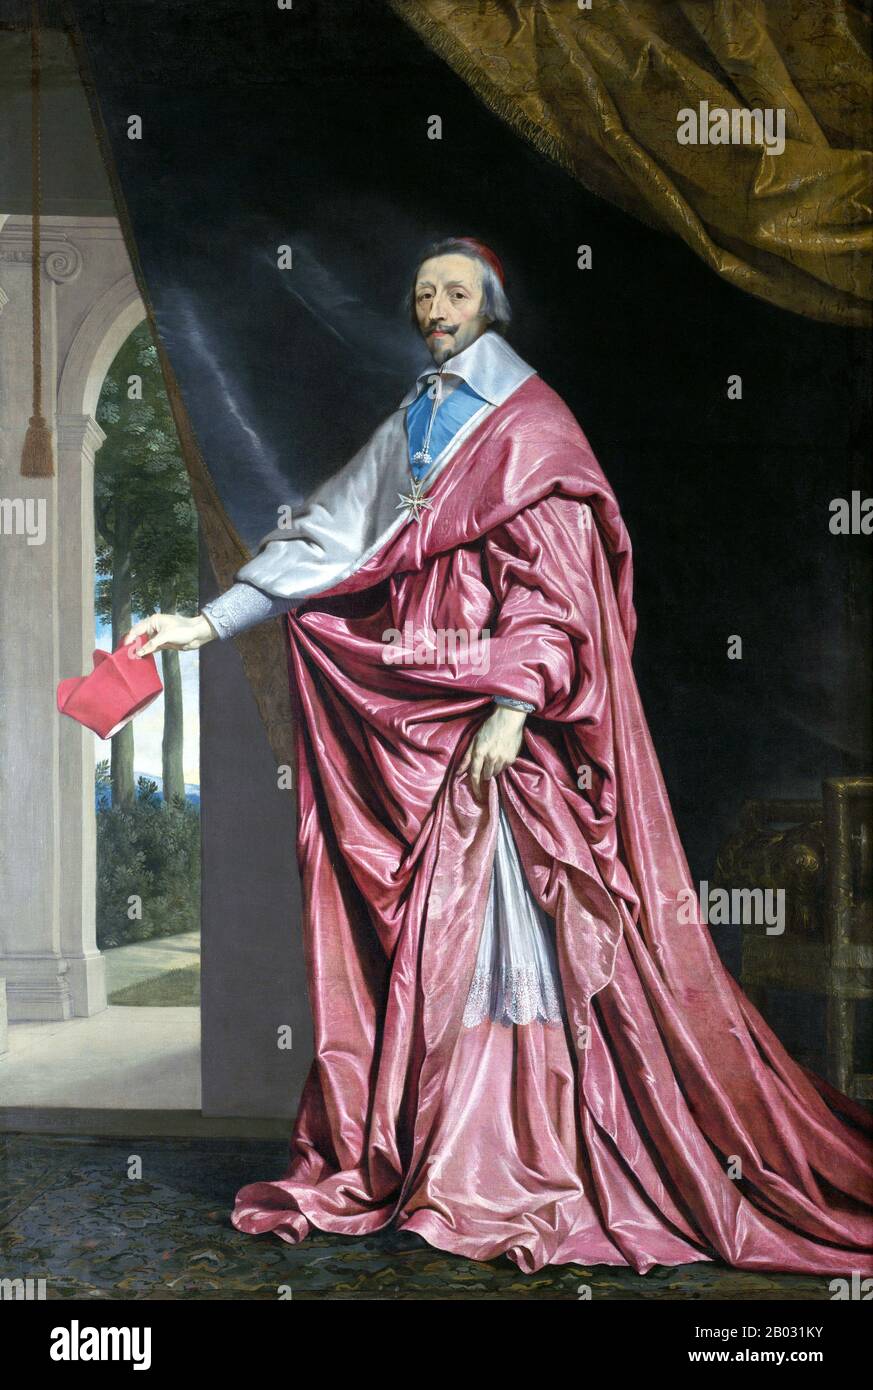 Armand Jean du Plessis, Cardinal-Herzog von Richelieu und von Fronsac (September 1585 - 4. Dezember 1642), allgemein als Kardinal Richelieu bezeichnet, war ein französischer Geistlicher, Adeliger und Staatsmann. 1607 wurde er zum Bischof und 1616 zum Außenminister ernannt. Richelieu stieg bald sowohl in der katholischen Kirche als auch in der französischen Regierung auf, wurde 1622 Kardinal und 1624 Chief Minister von König Louis XIII. Er blieb bis zu seinem Tod 1642 im Amt; er wurde Nachfolger von Kardinal Mazarin, dessen Karriere er gefördert hatte. Stockfoto